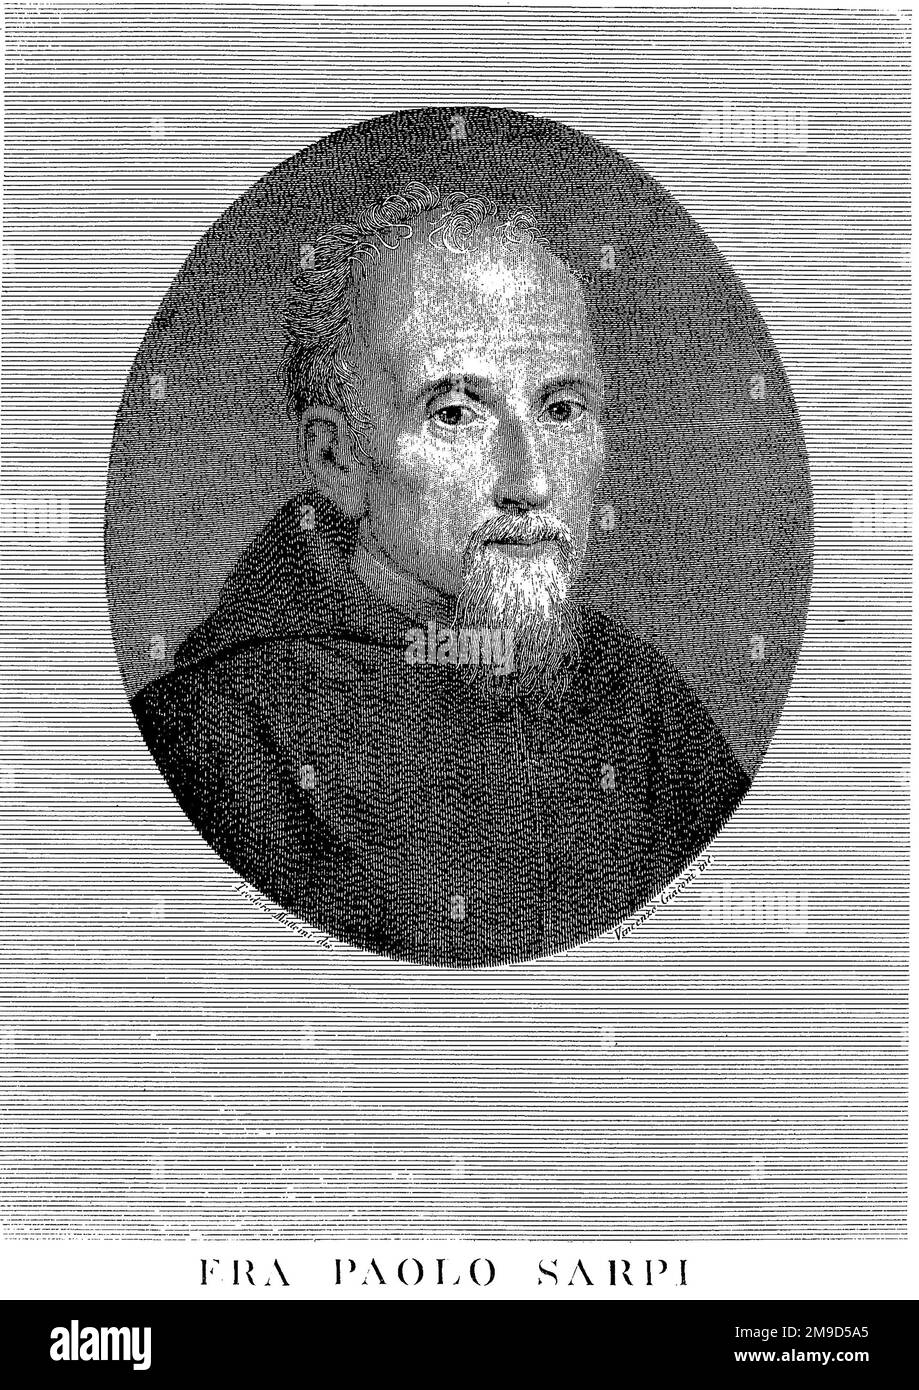 1600 ca, Venice , ITALY : The italian politician , historian and teologist Frà PAOLO SARPI ( 1552 - 1623 ). Portrait engraved by Vincenzo Giaconi , from the original work by Teodoro Matterini, XIX Century. - HISTORY - FOTO STORICHE - POLITICO - POLITICA - POLITIC - TEOLOGO - TEOLOGIA - THEOLOGY - THEOLOGIAN - STORICO - STORICISTA - foto storiche - fot?o storica - portrait - religioso - RELIGIONE - Frate - CATTOLICA - CATHOLIC RELIGION - prelato - prete - priest - portrait - ritratto - illustrazione - incisione  - engraving - Roman Catholic Church  --- Archivio GBB Stock Photo